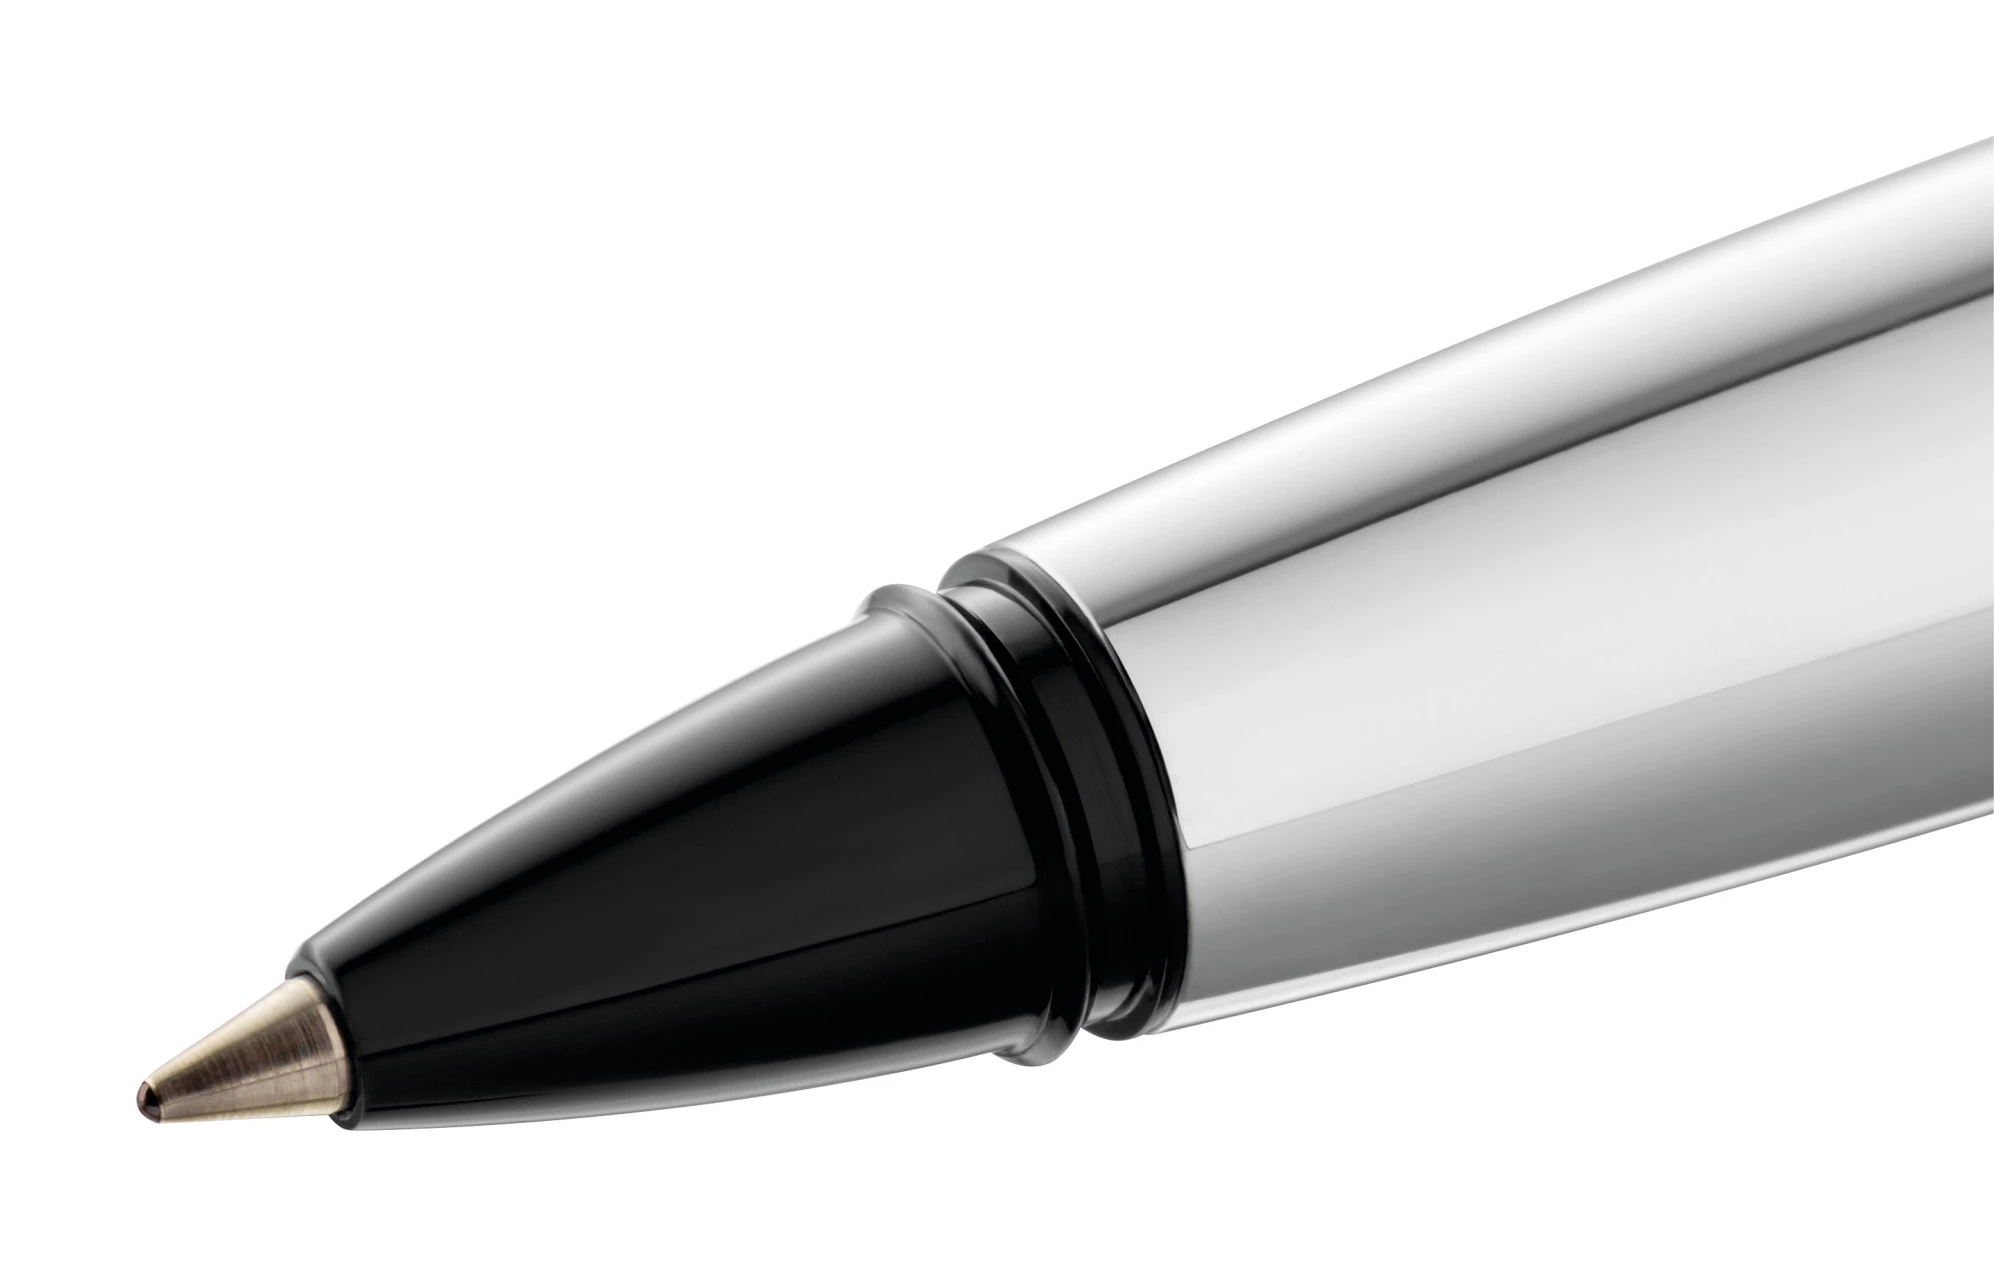 Ручка роллер Pelikan Elegance Pura R40 (PL817448) антрацитовый/серебристый